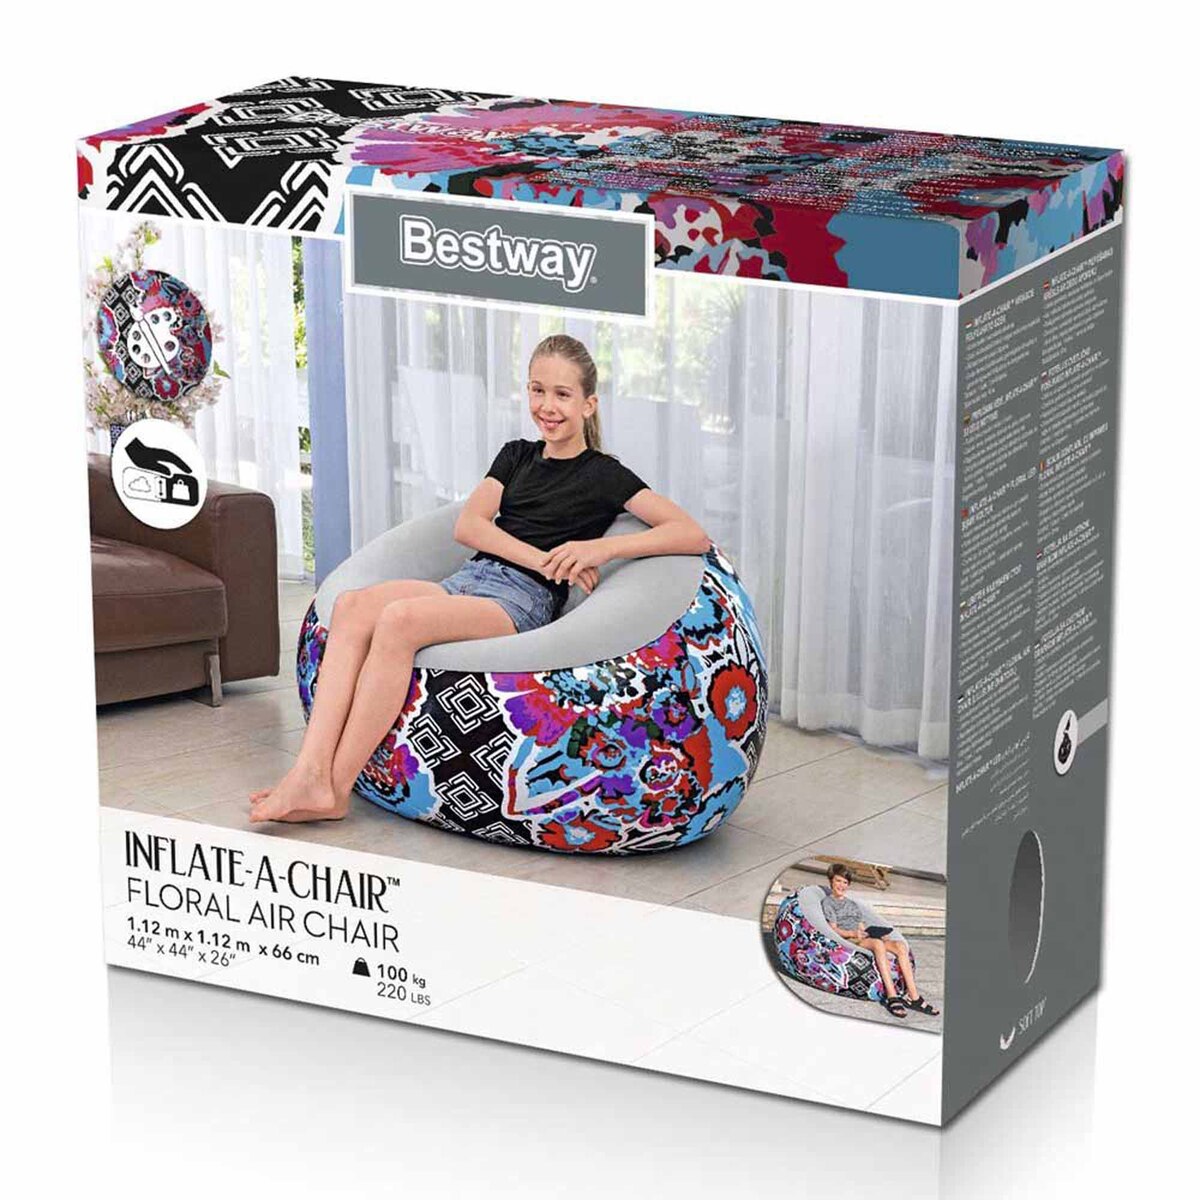 Best Way Floral Air Chair, 112 x 112 x 66 cm, 75111